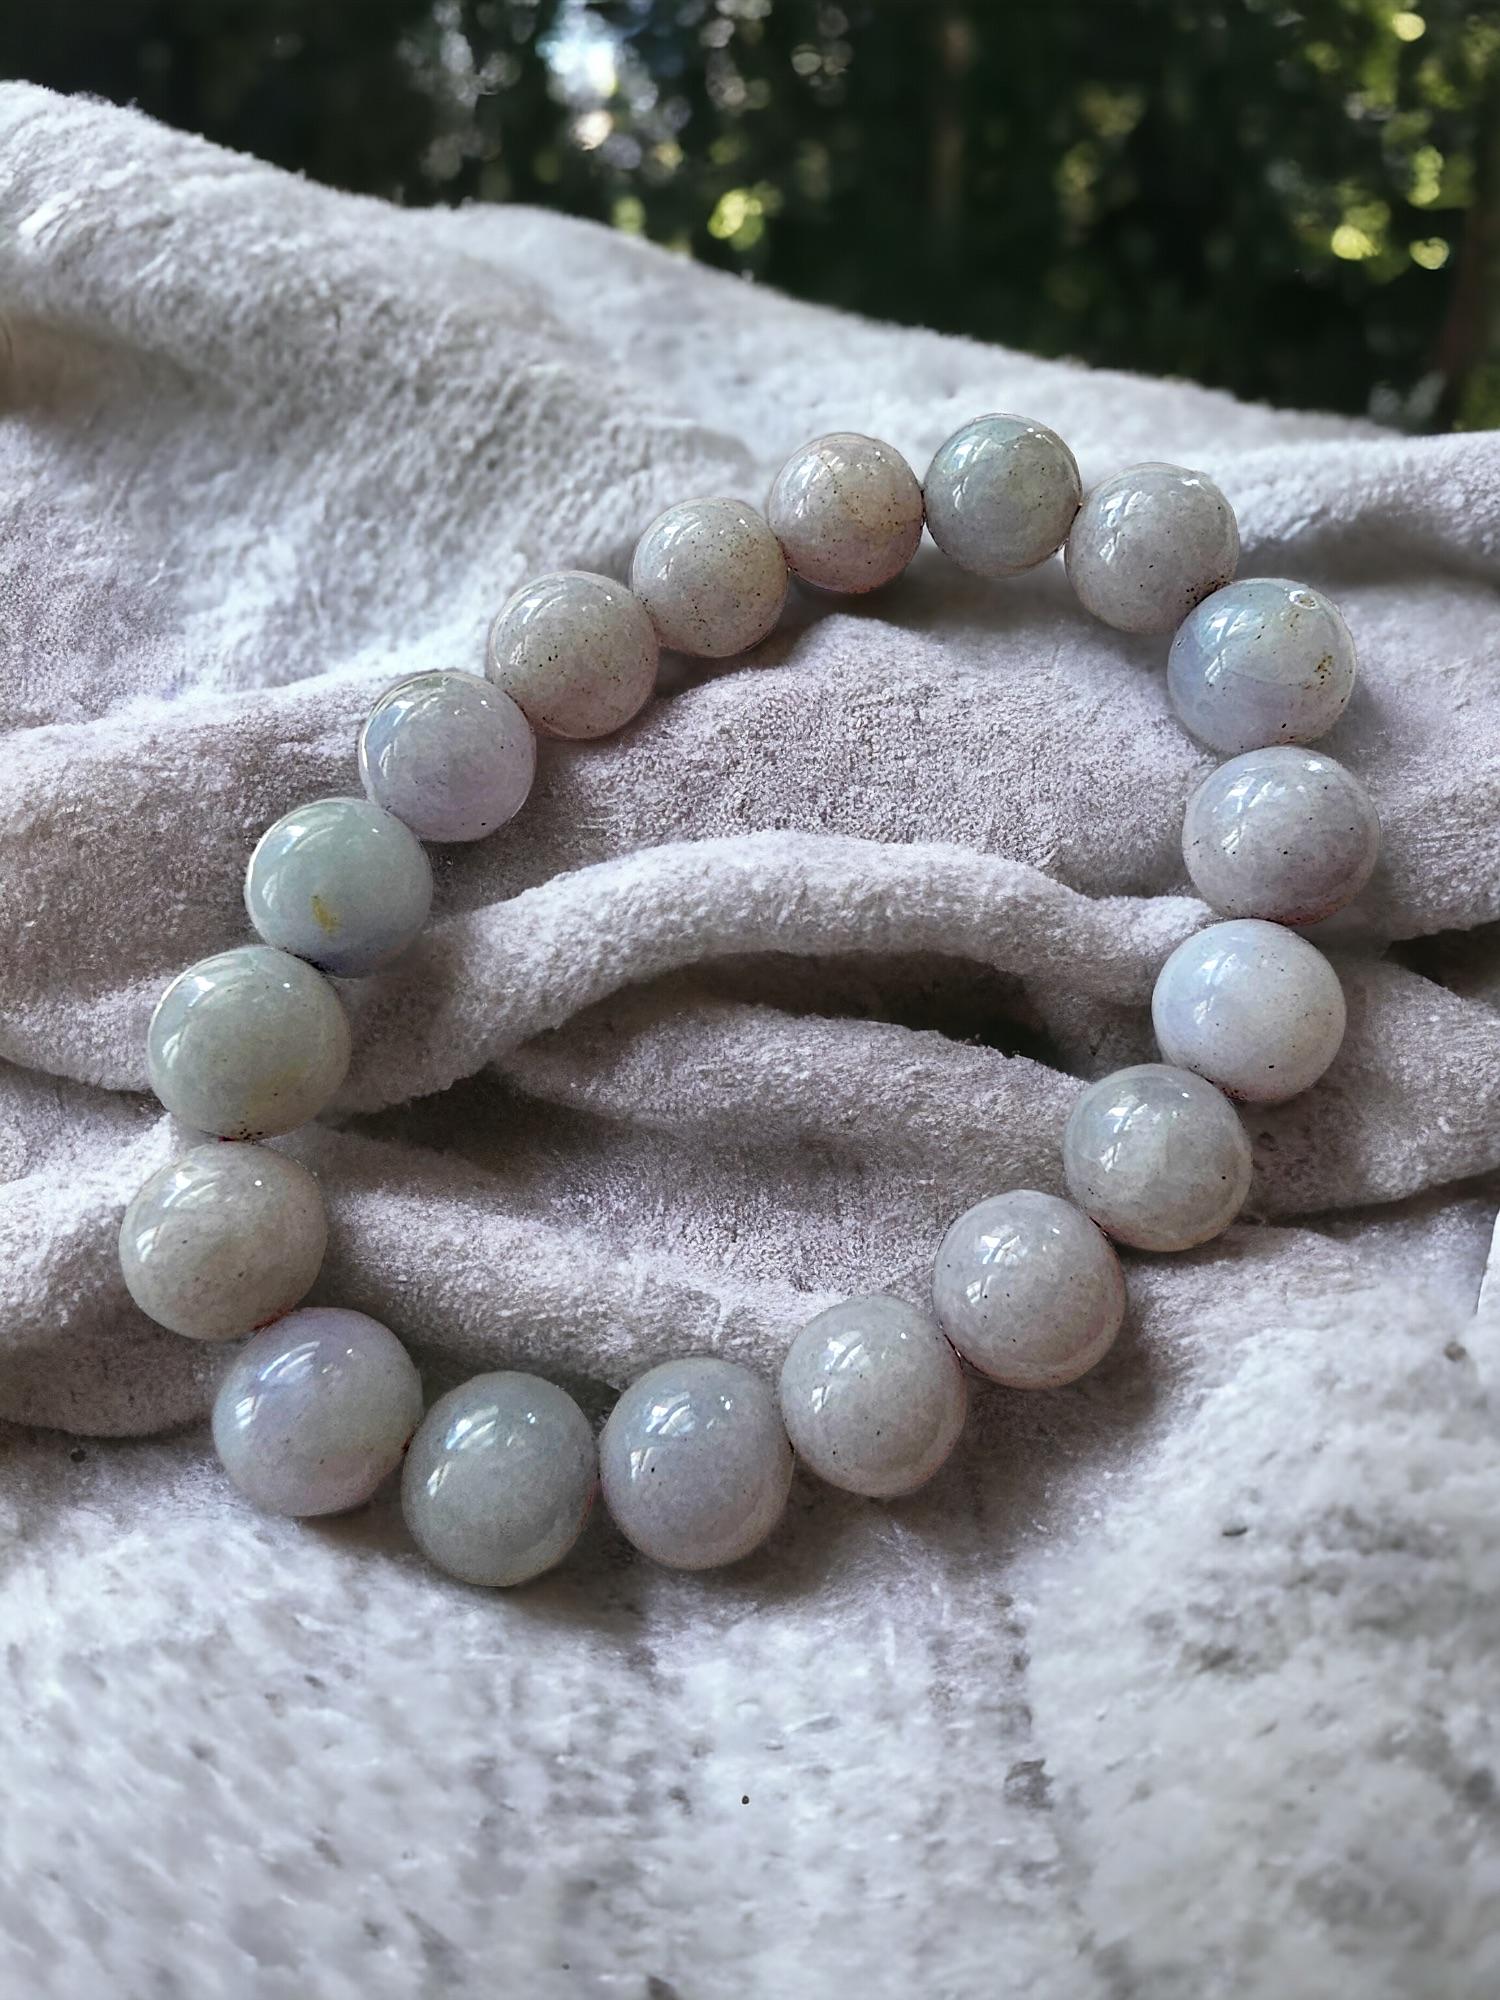 Bracelet impérial de perles de jade birman violet et lavande (10-10.5mm chaque x 18 perles) 06005

10-10.5mm chacune, 18 perles de jadéite lavande et verte parfaitement calibrées. Ce bracelet en perles de jadéite A de Birmanie est l'une des teintes